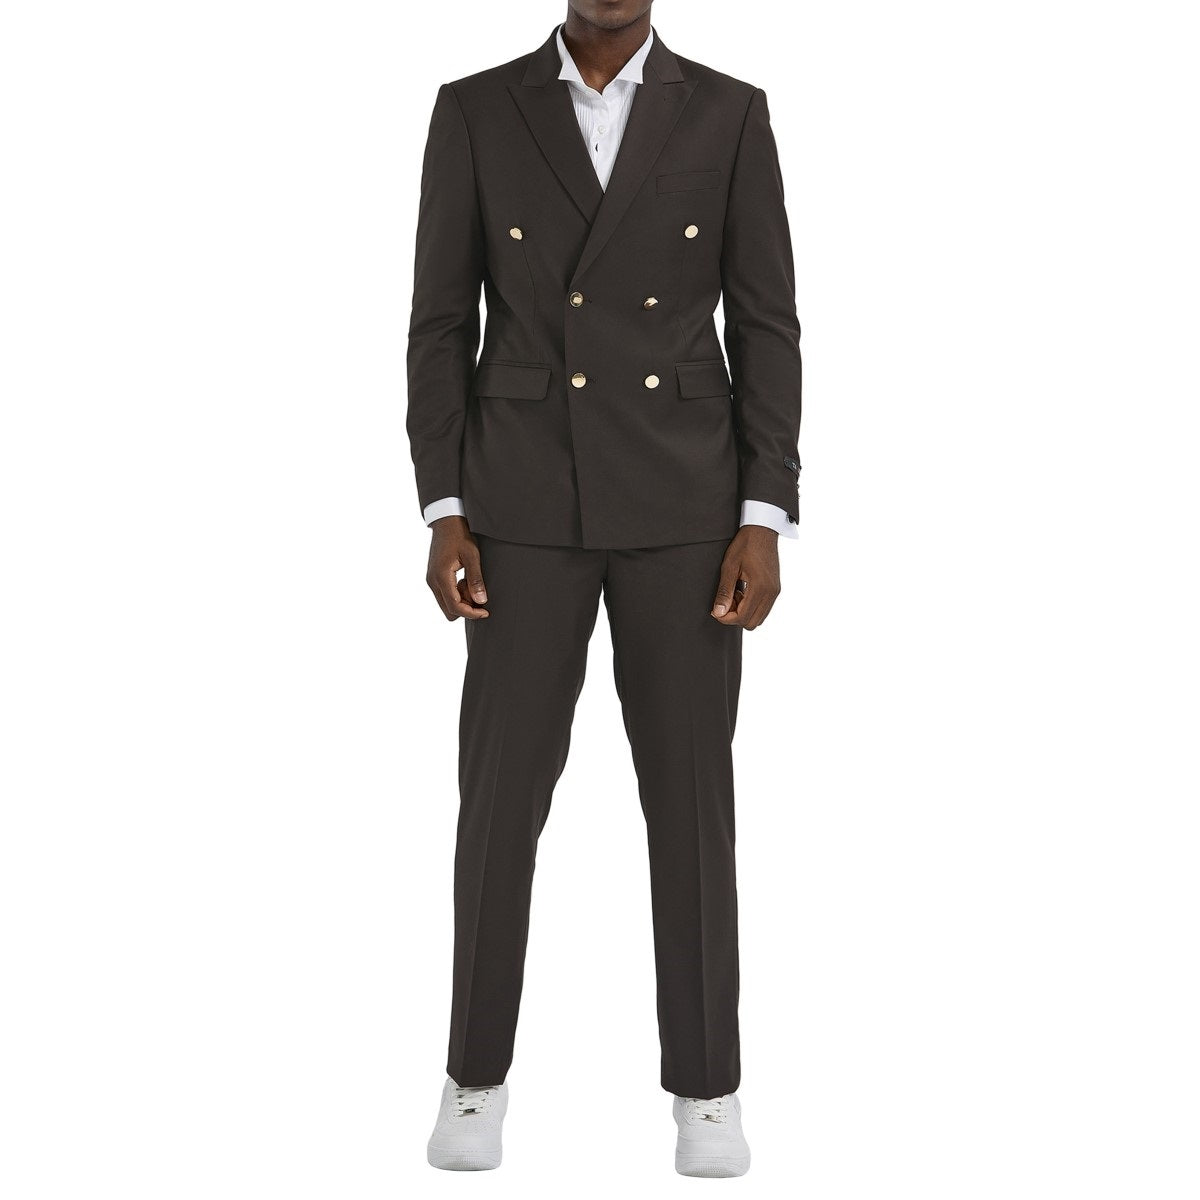 Traje Formal para Hombre TA-M356SK-03 - Formal Suit for Men